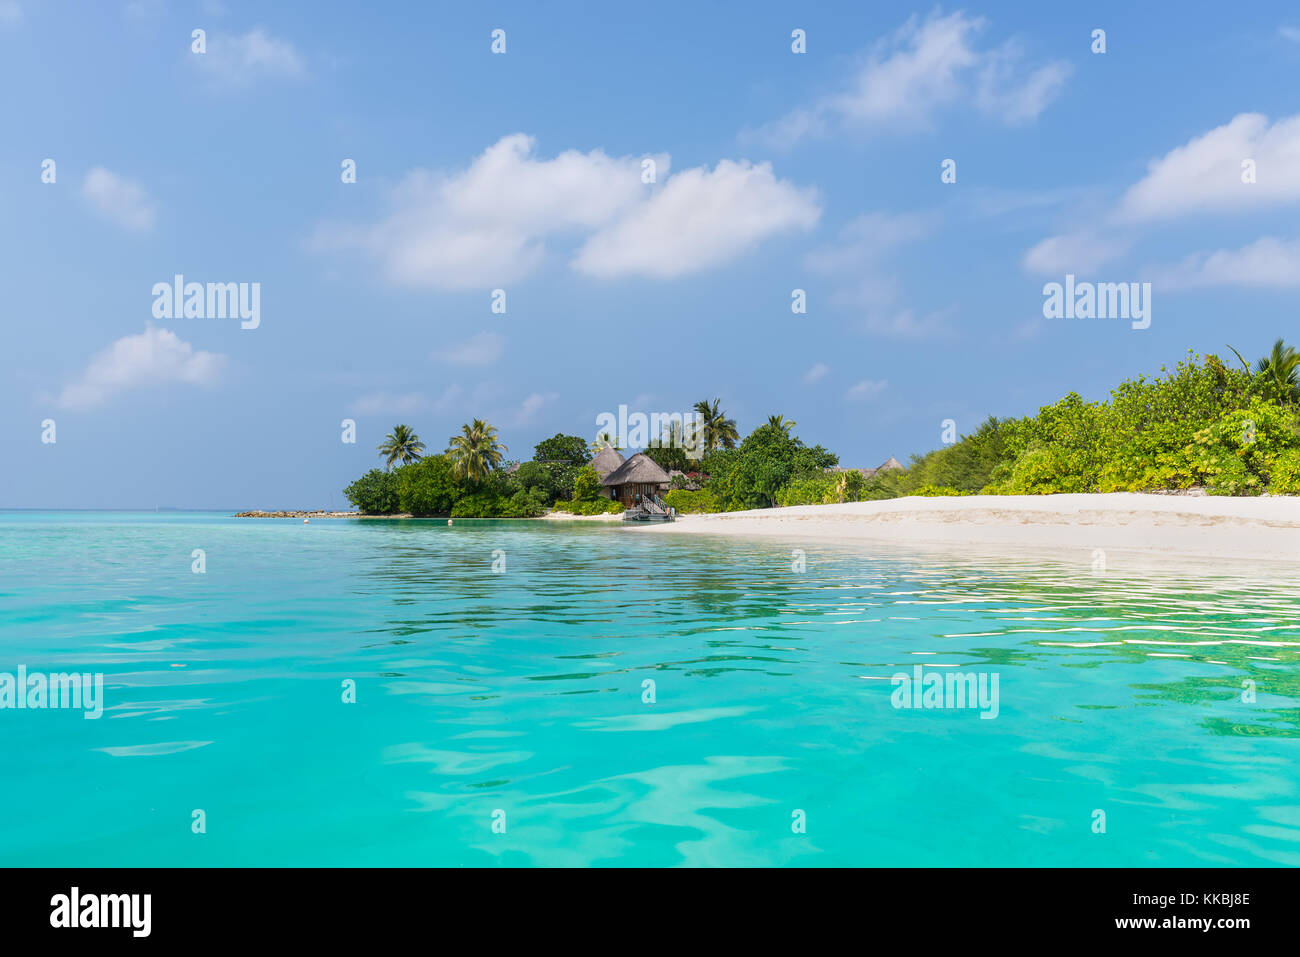 Paysage avec une petite île dans les Maldives, l'océan indien, l'Atoll de Kaafu, kuda huraa island Banque D'Images